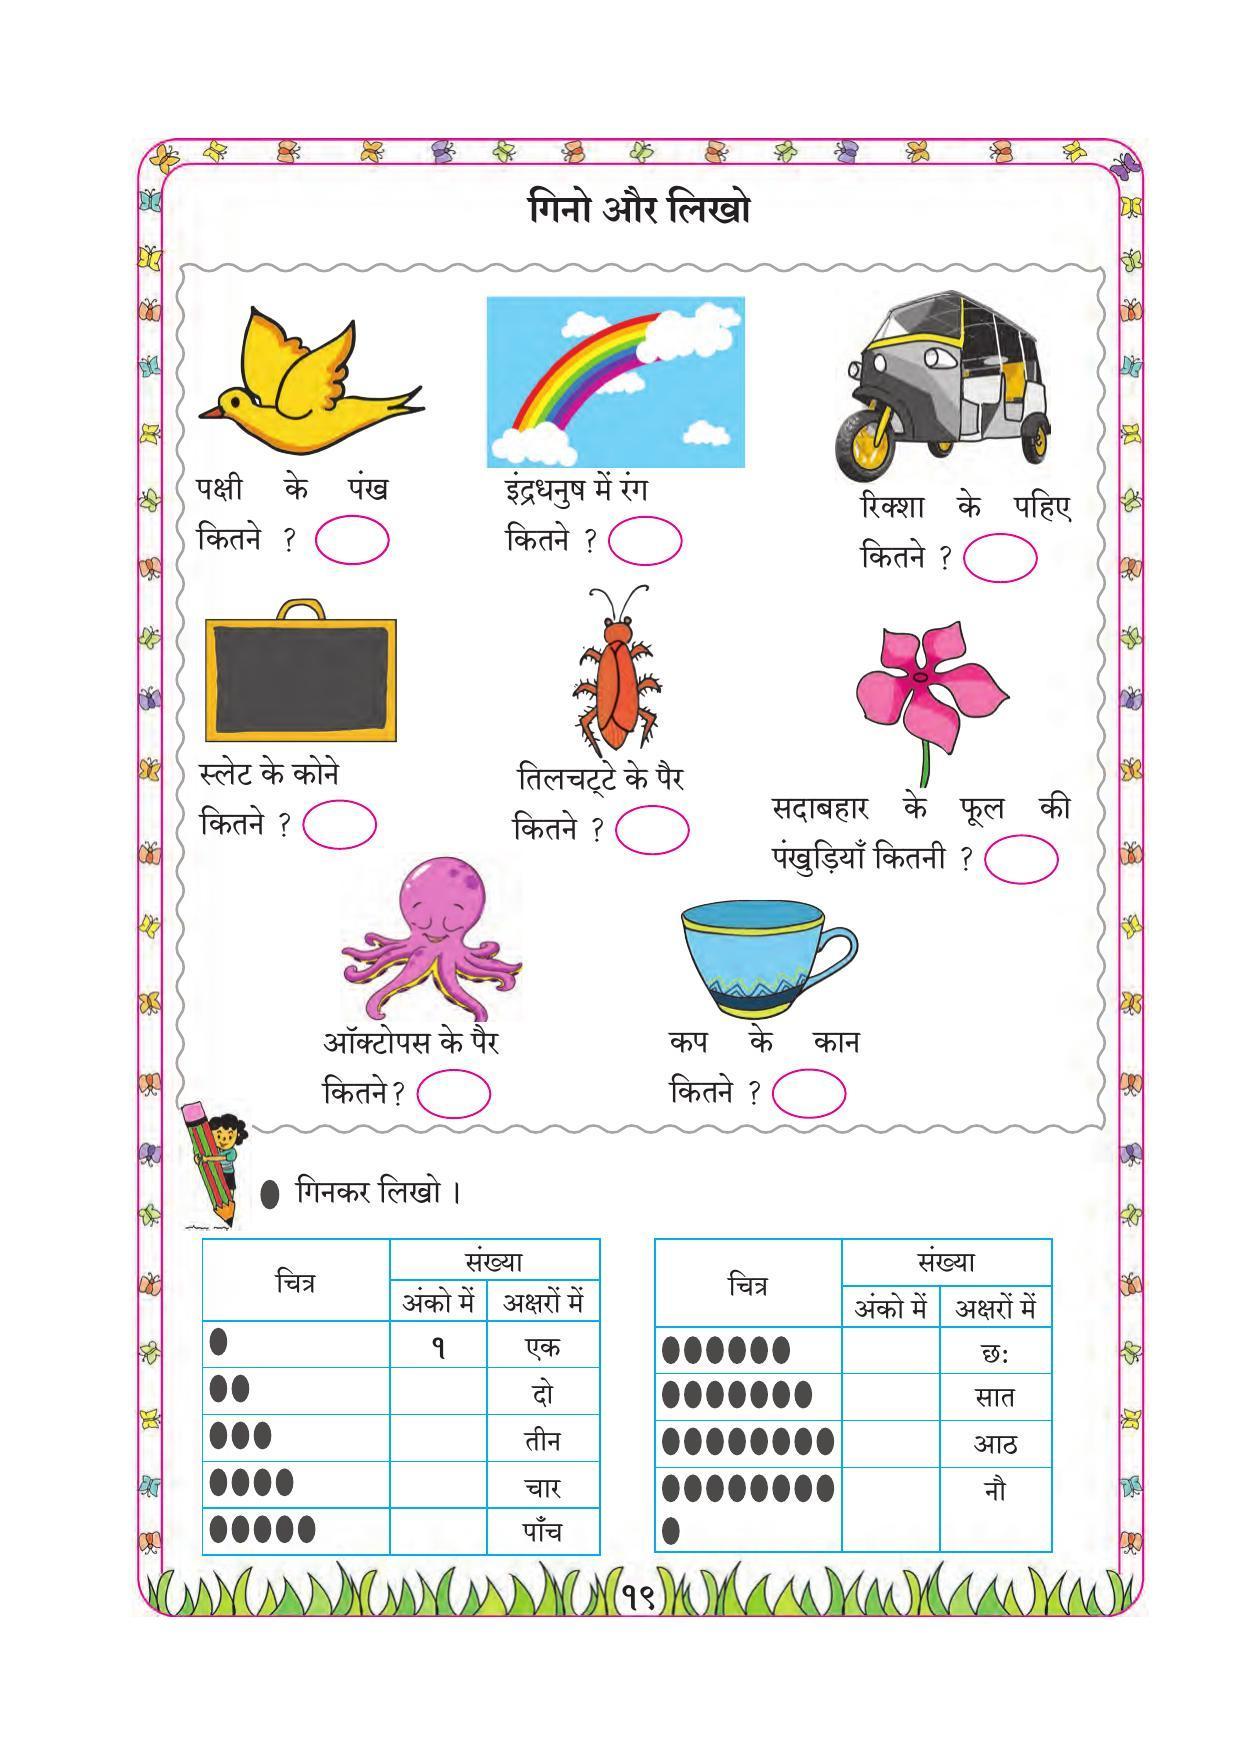 Maharashtra Board Class 1 Maths (Hindi Medium) Textbook - Page 29